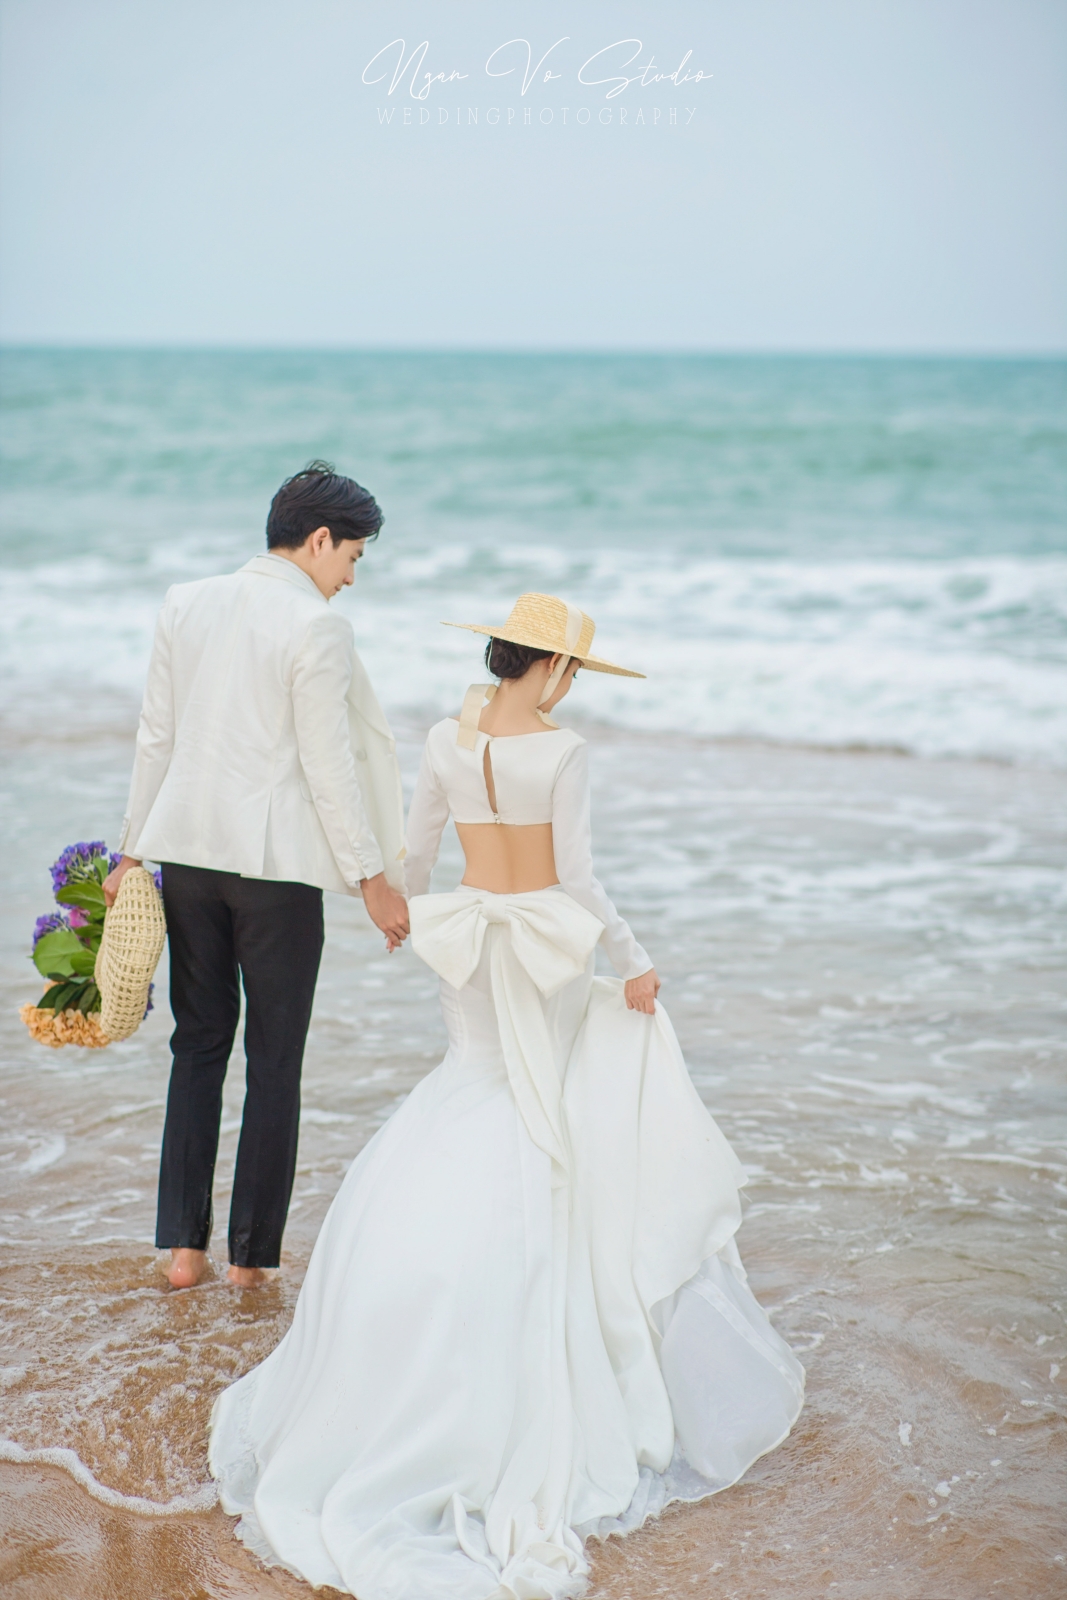 Ảnh cưới Hồ Cốc - Biển 01